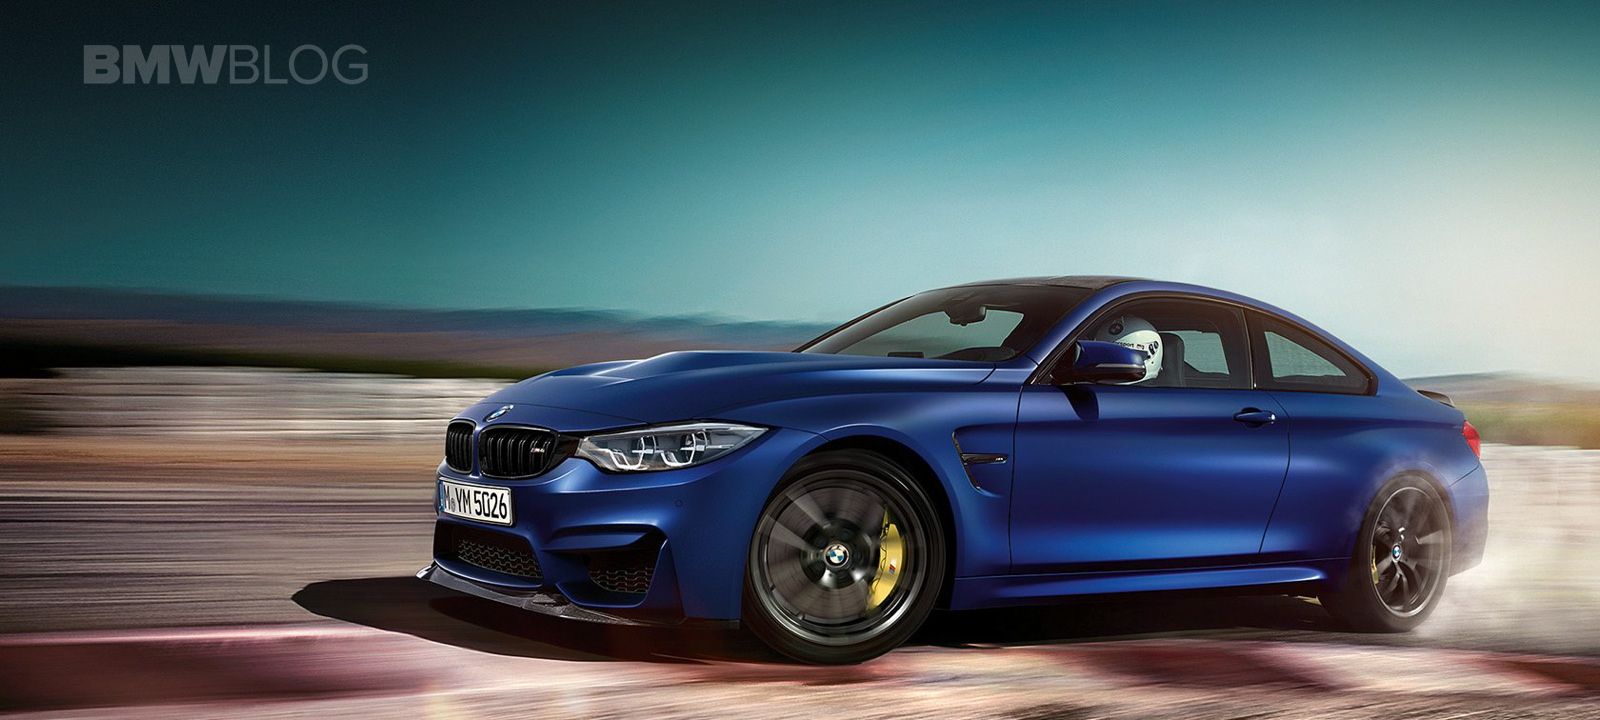 Fondos de pantalla: BMW M4 CS